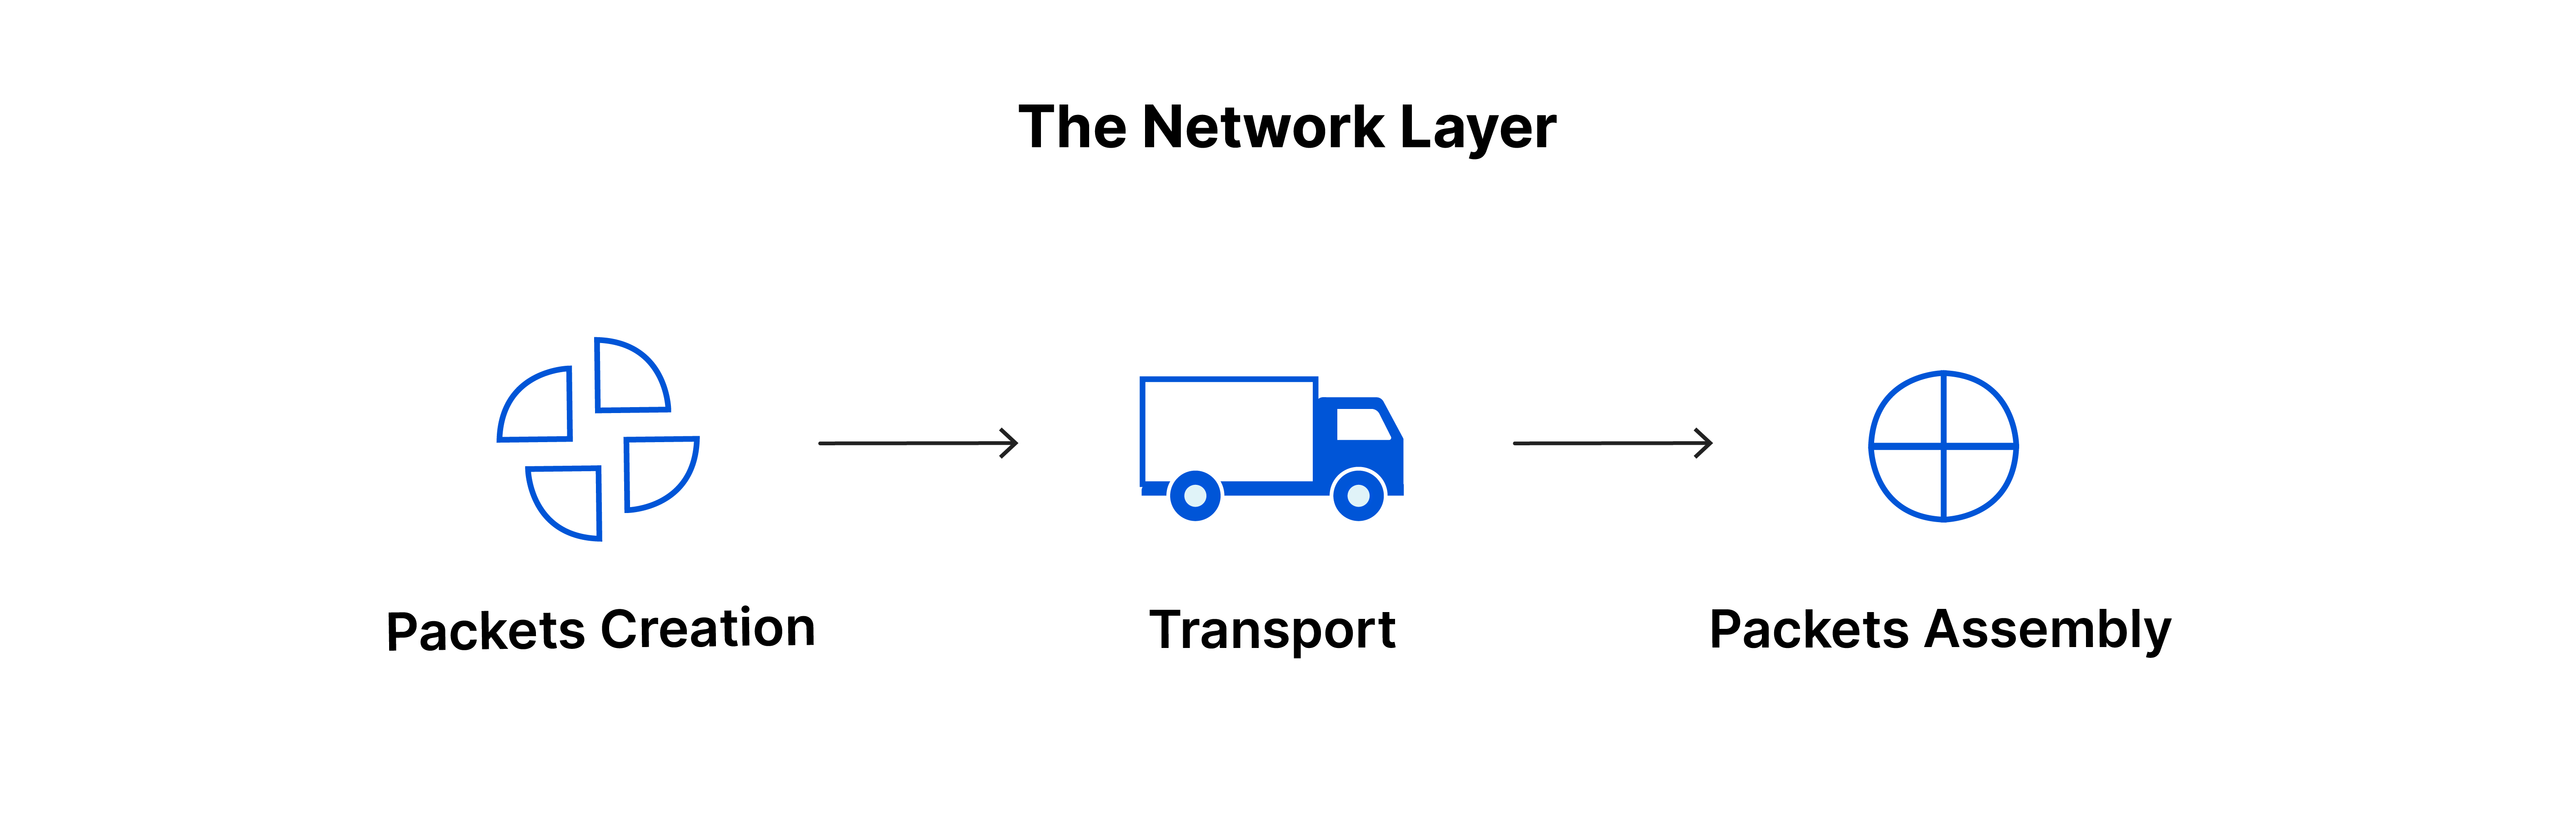 네트워크 계층: 패킷 생성, 전송, 패킷 어셈블리